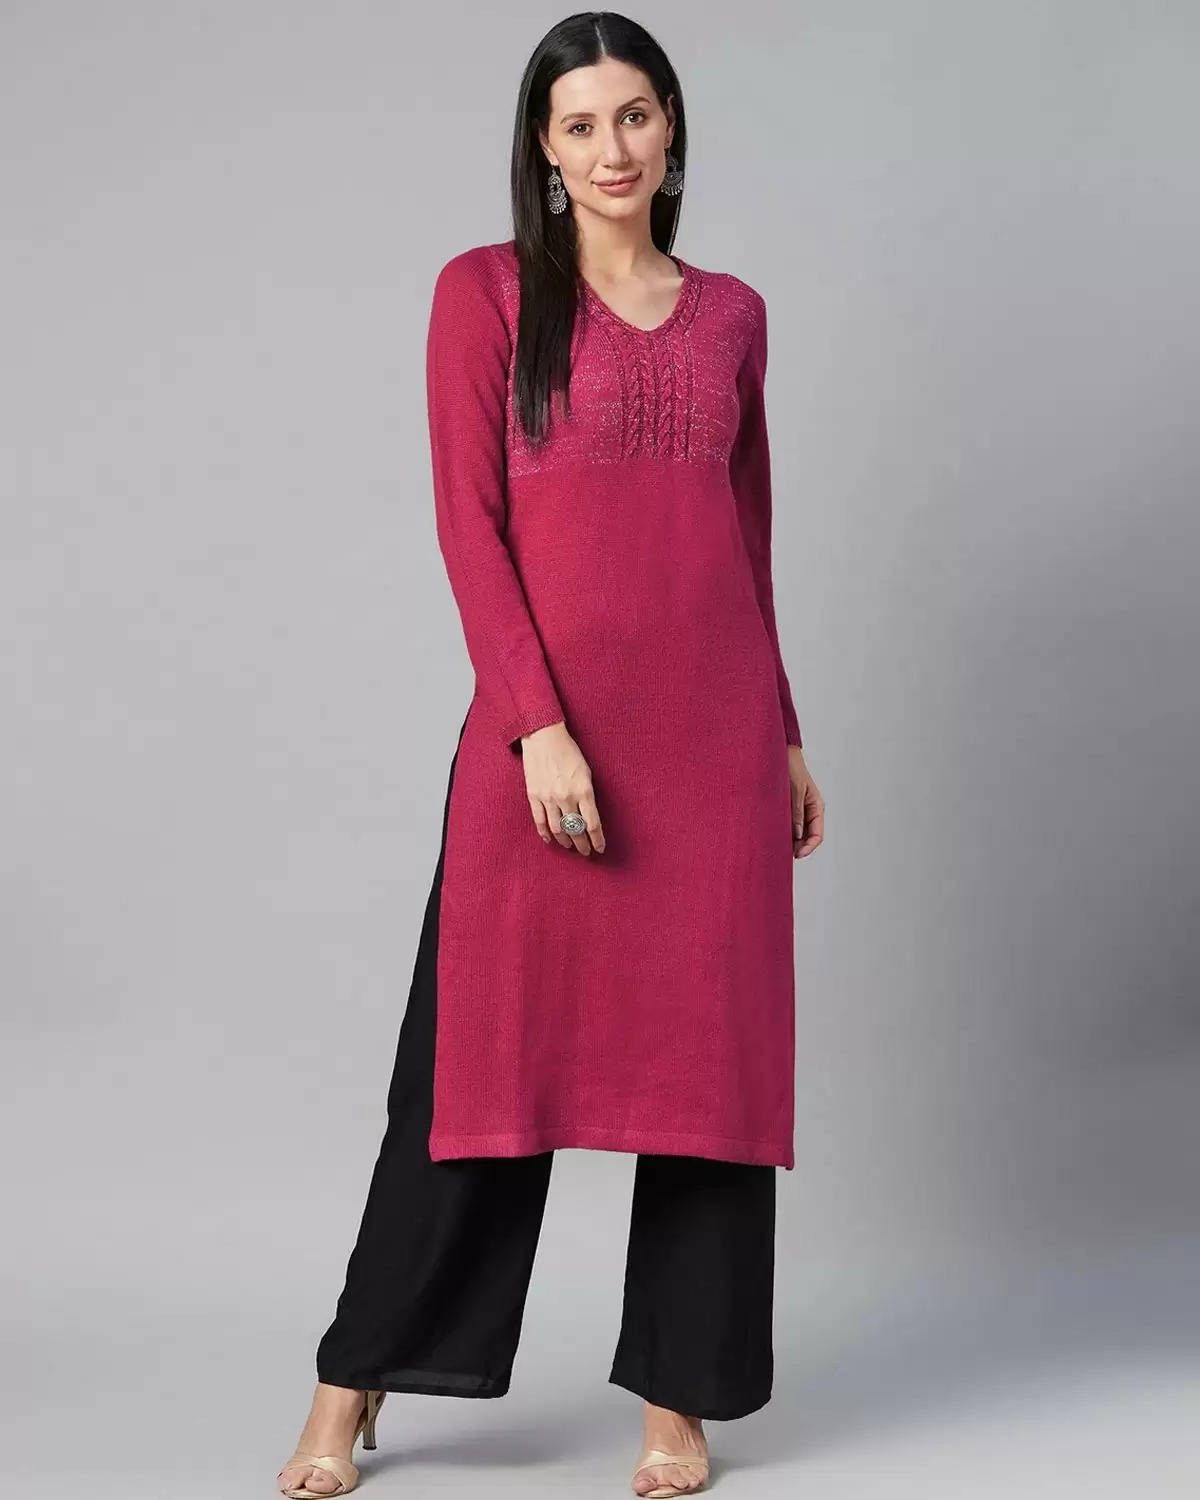 Letest woolen kurtis for ladies: आपकी सोच से भी सस्ते मिलेंगे सर्दियों के लिए आउटफिट्स, वुलन कुर्ती मात्र 200 रुपये से शुरू